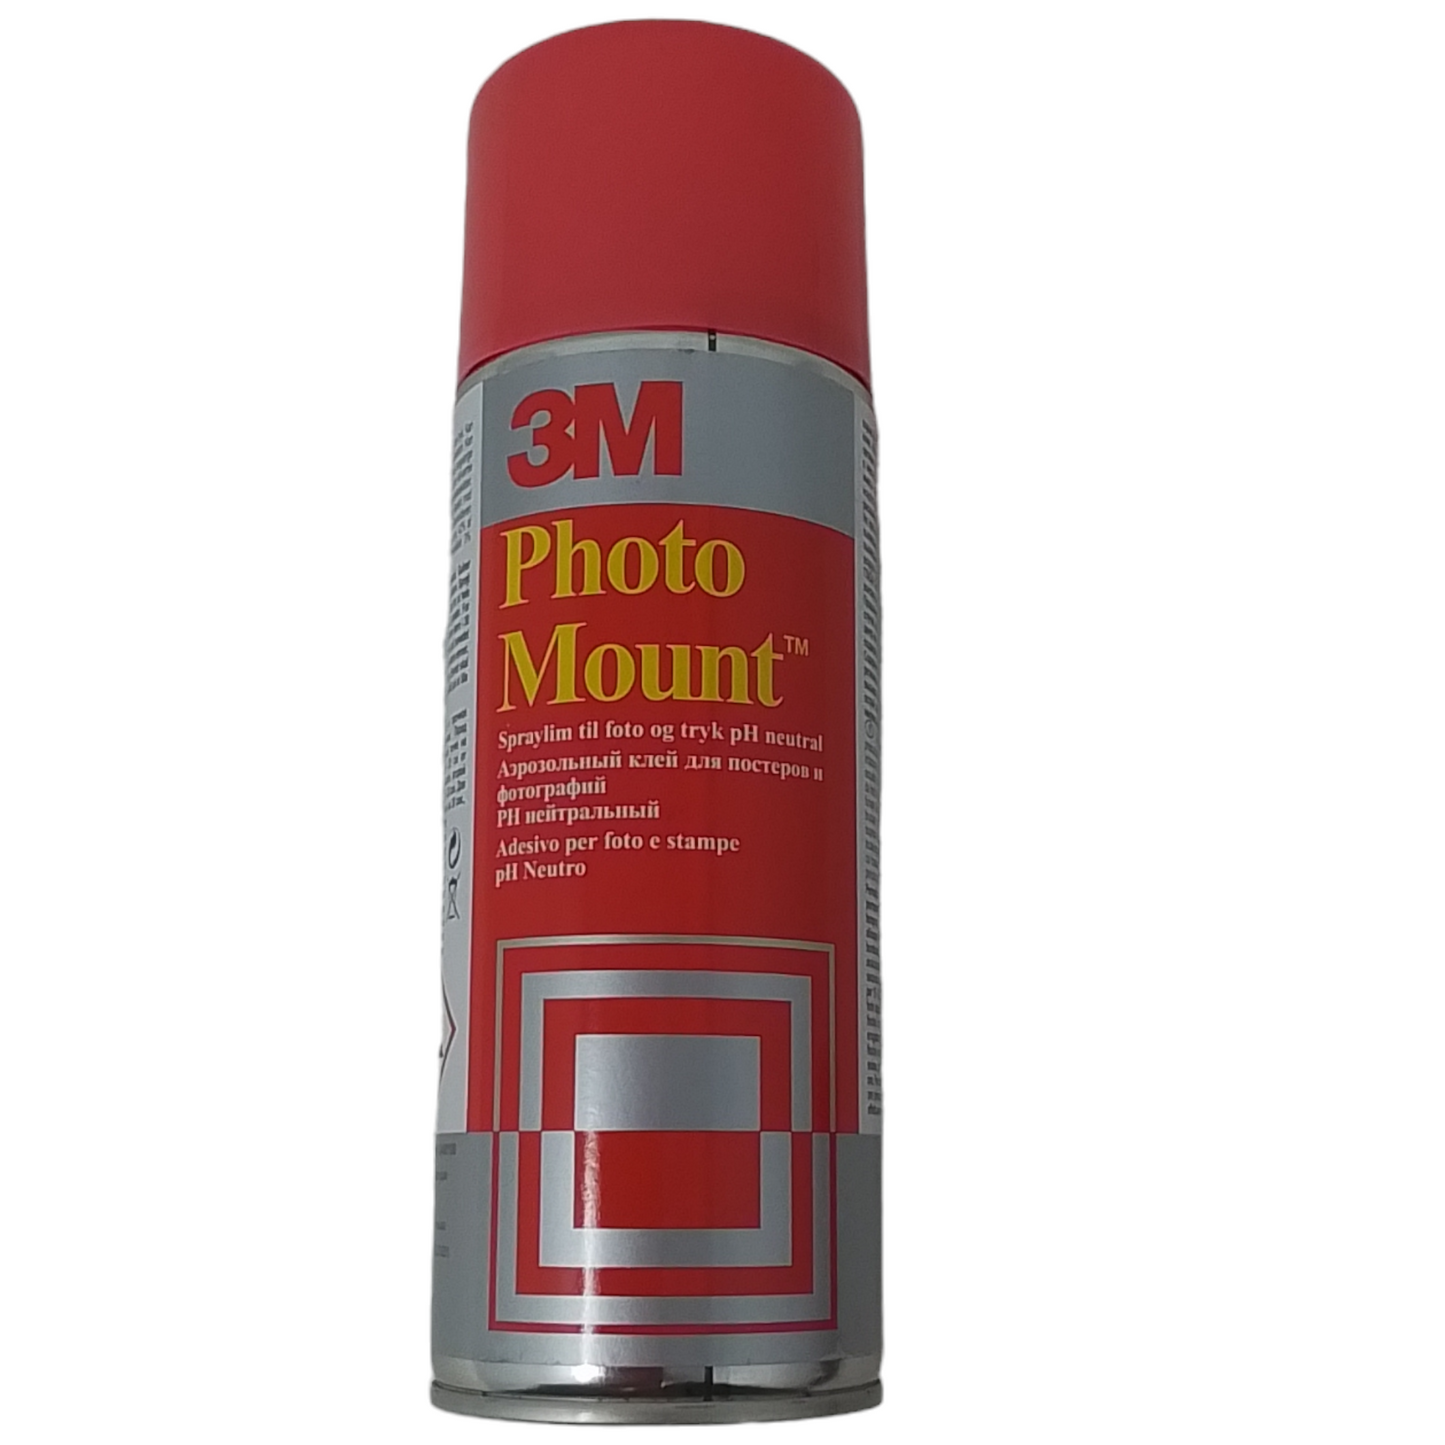 3M MOUNT - Adesivo Spray